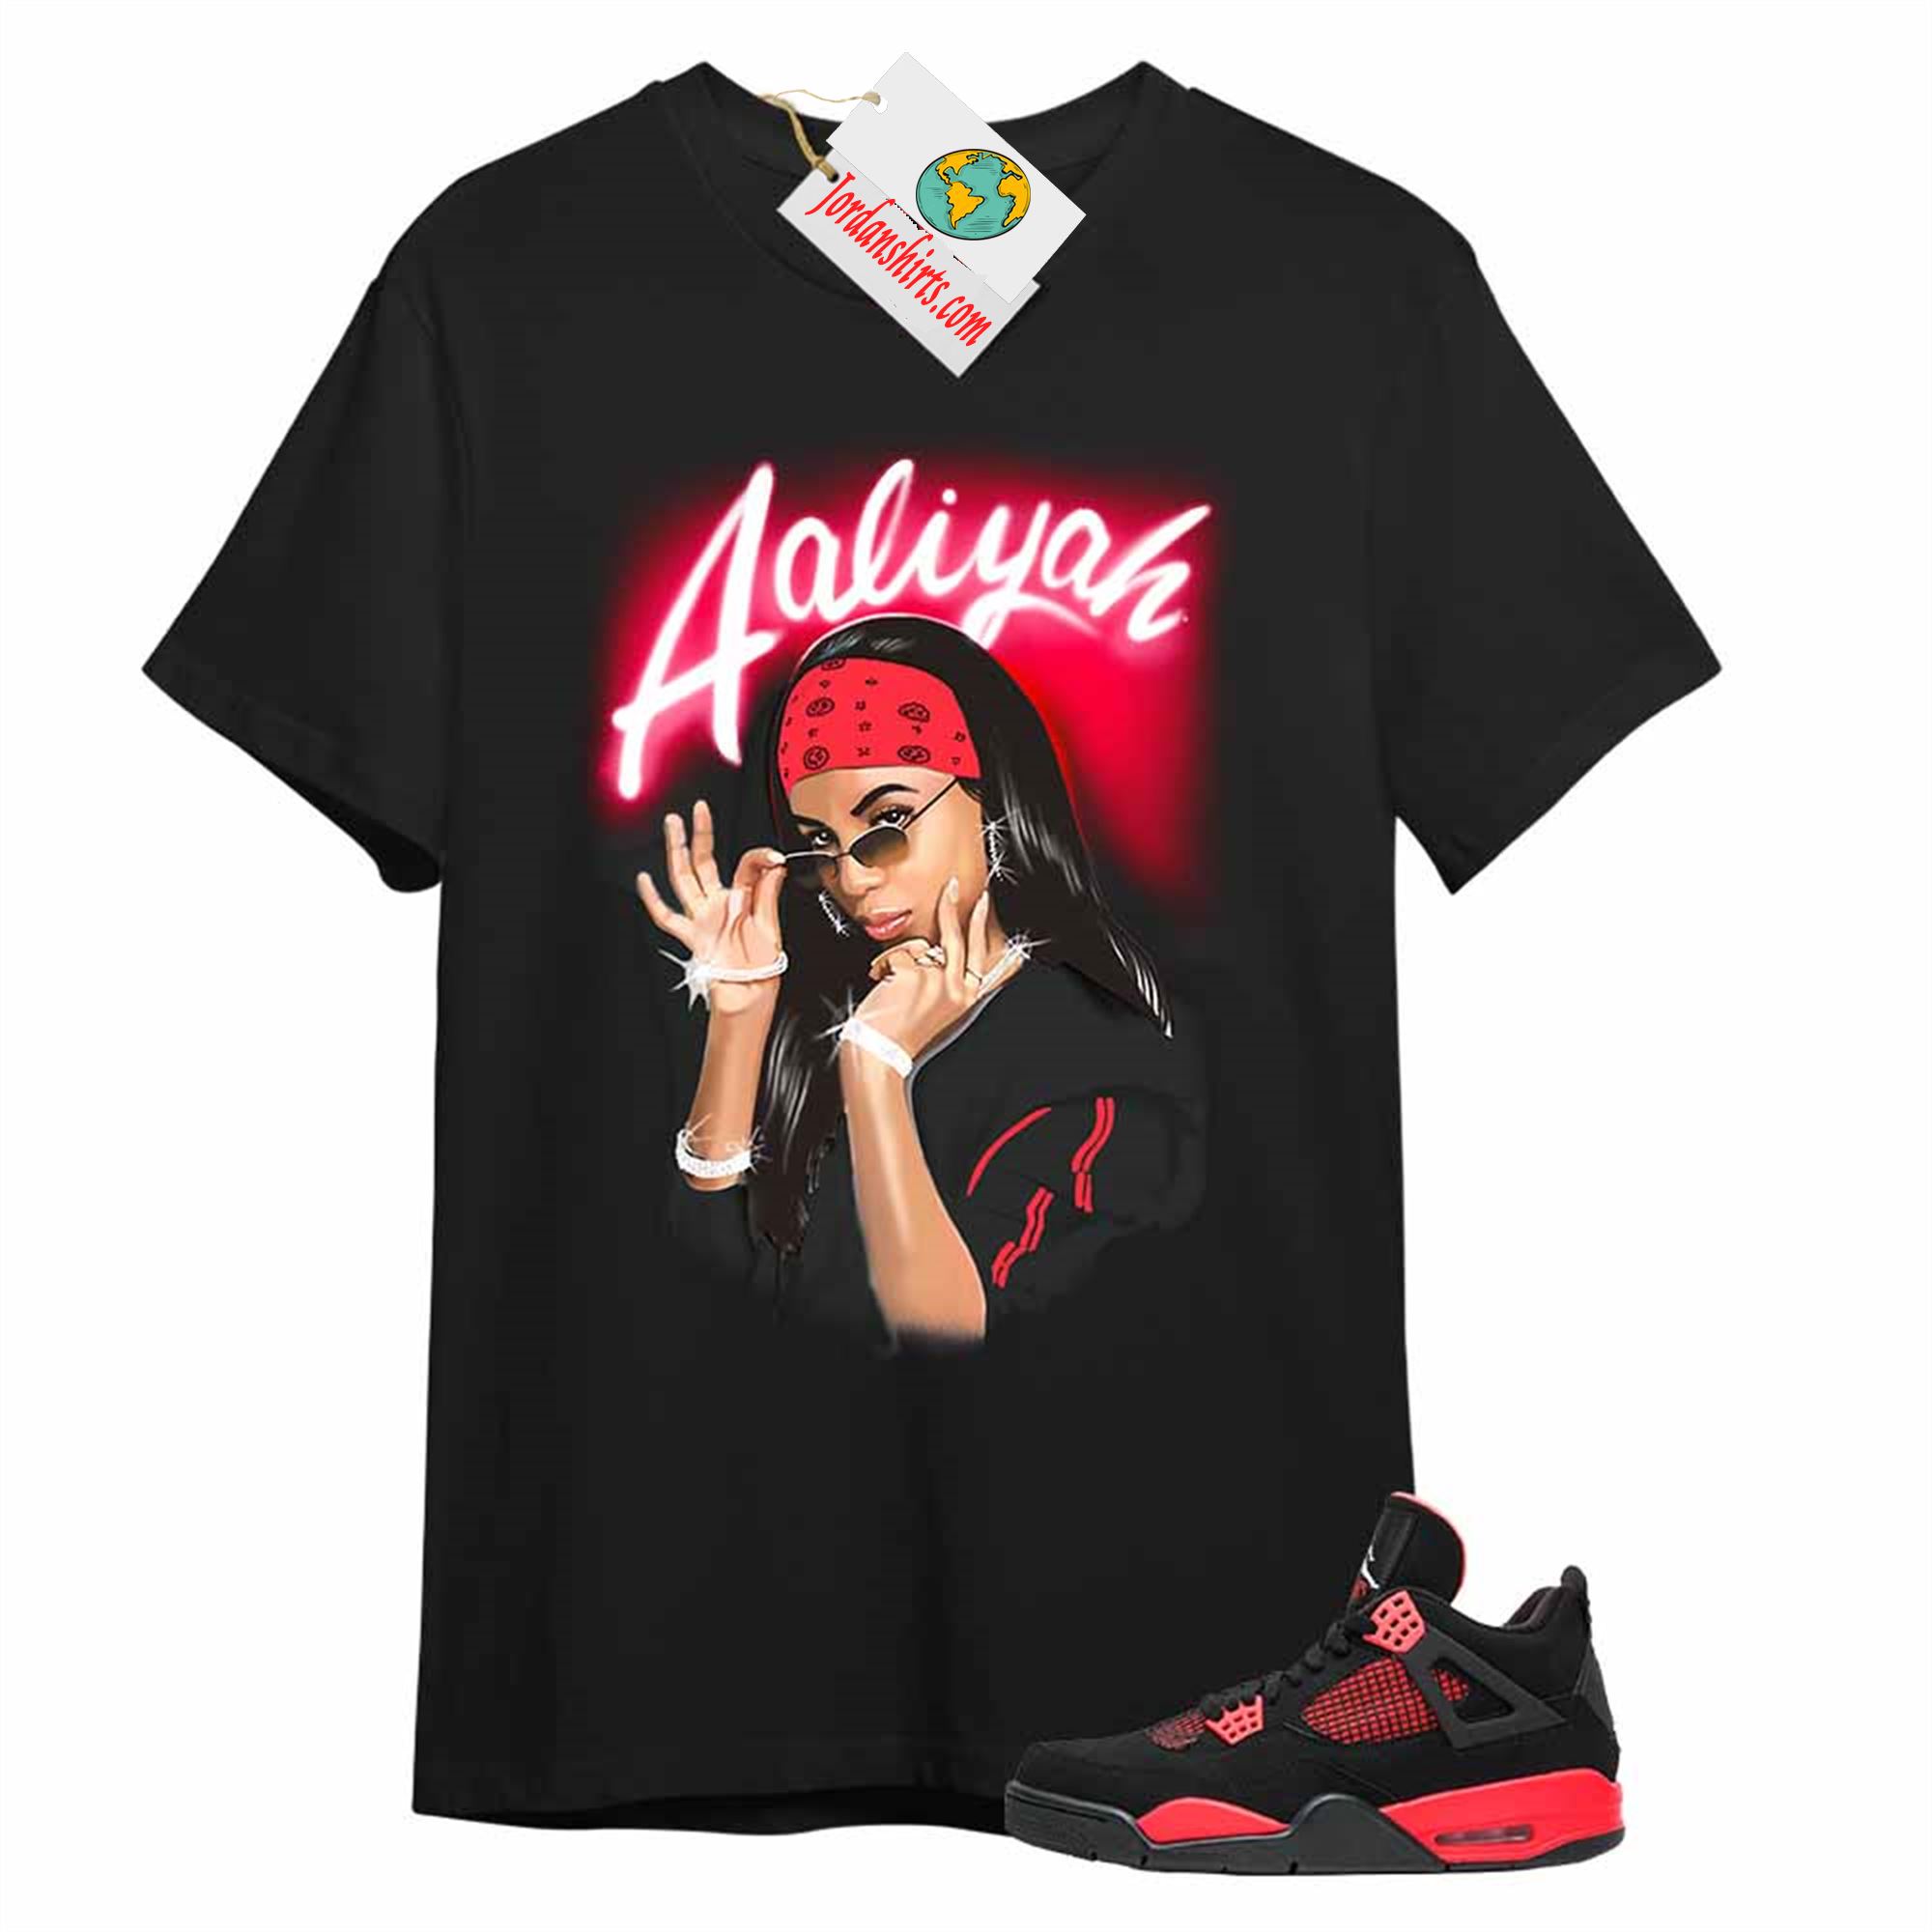 Jordan 4 Shirt, Aaliyah Airbrush Black T-shirt Air Jordan 4 Red Thunder 4s Plus Size Up To 5xl